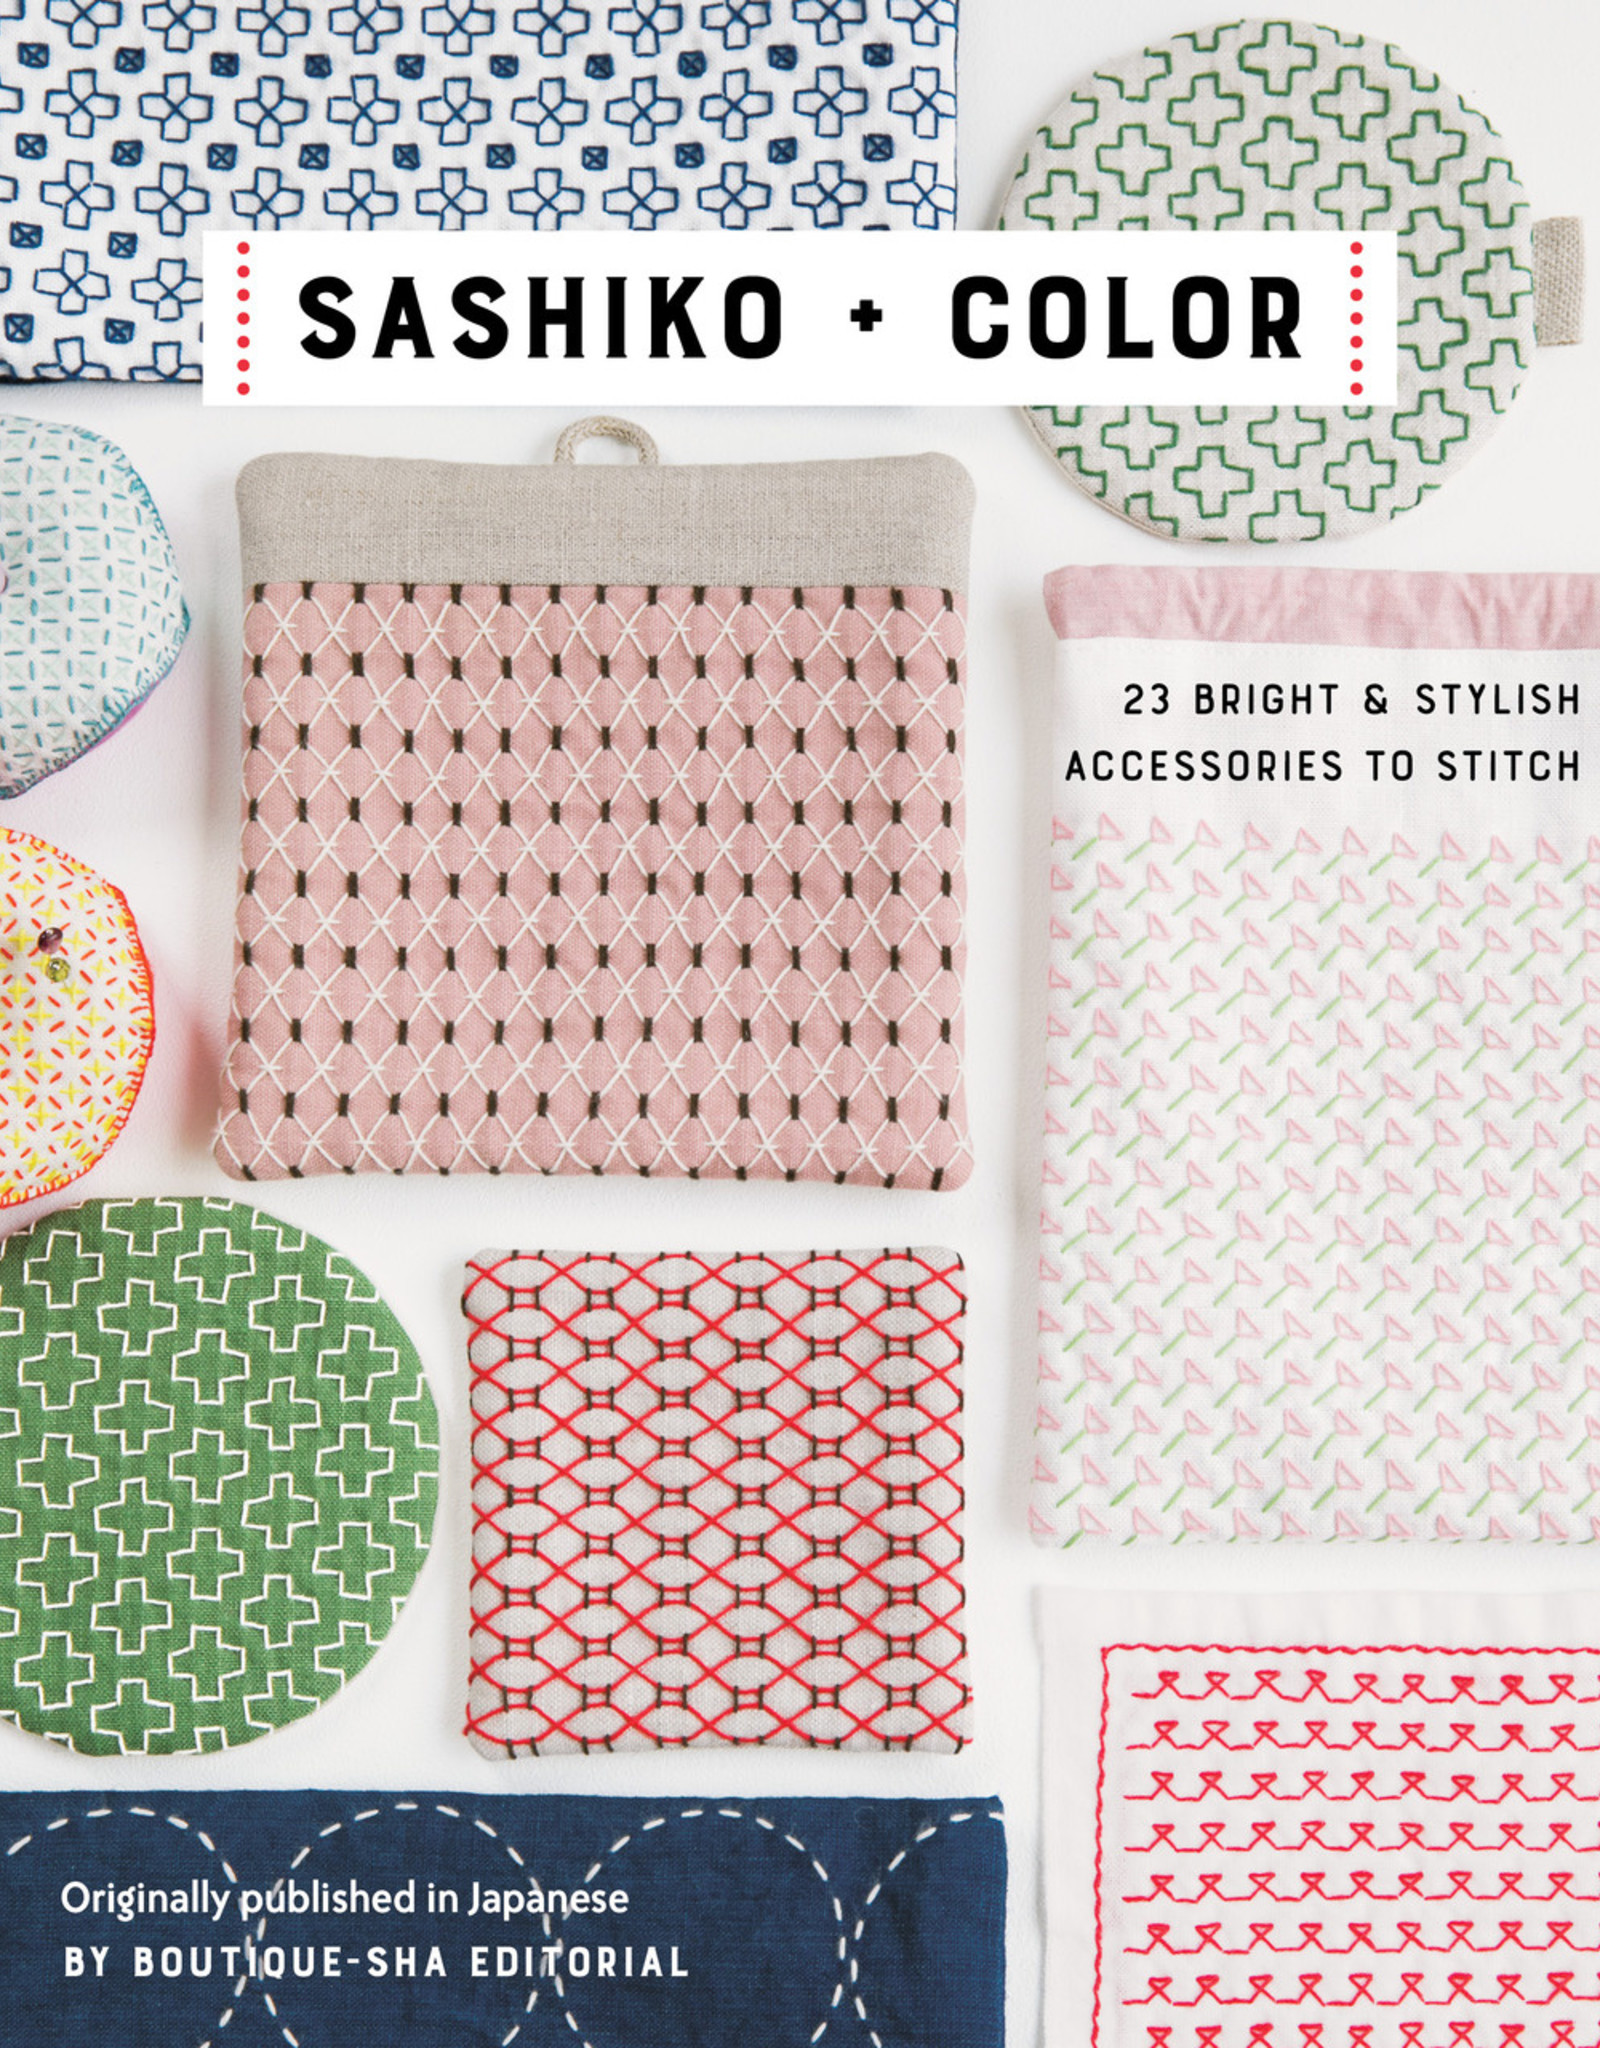 Sashiko and Color